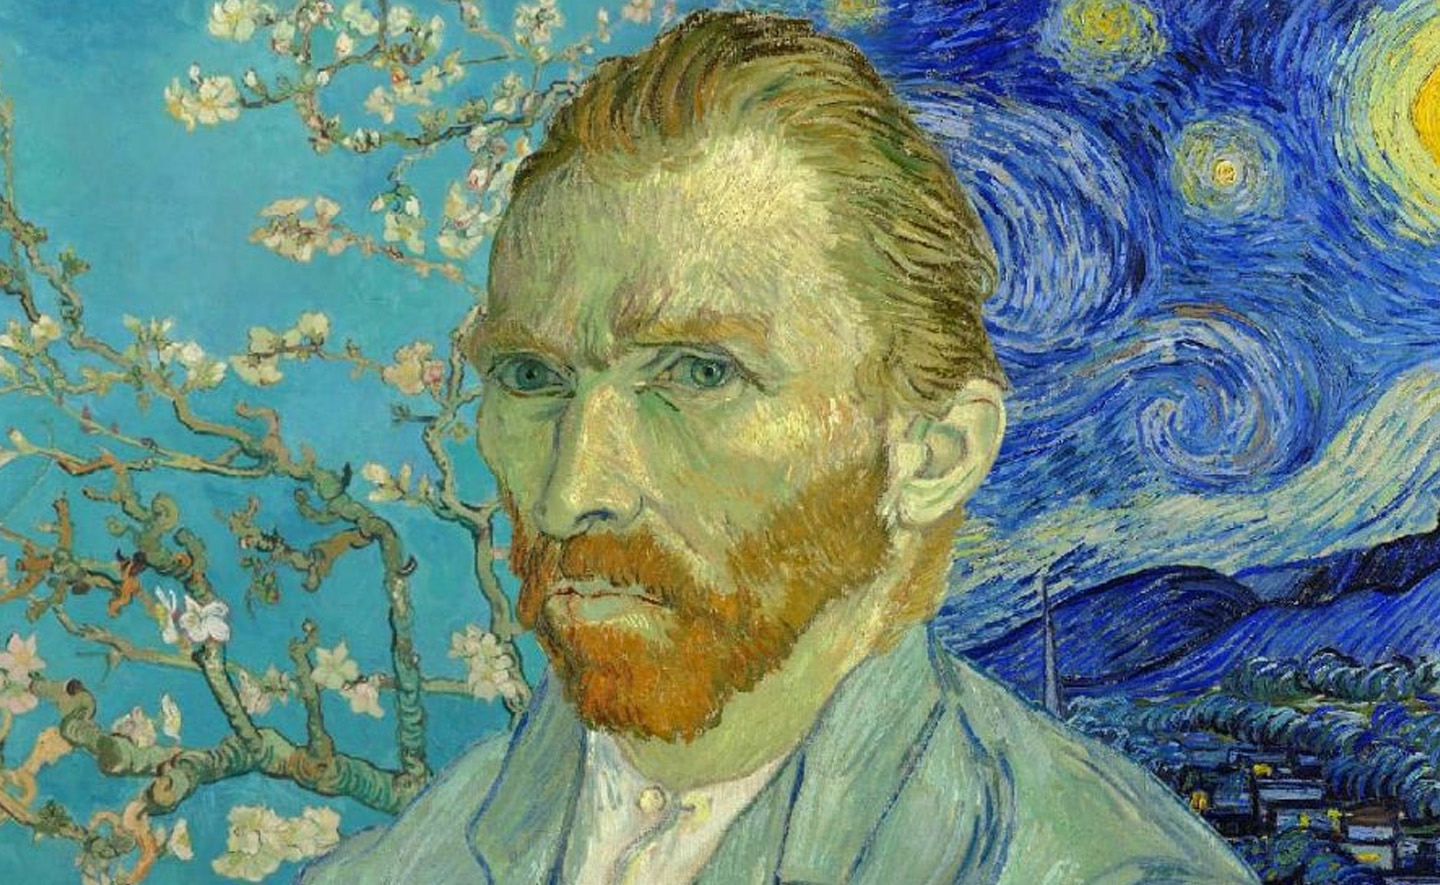 20 câu nói của Van Gogh giúp truyền cảm hứng cho những tâm hồn sáng tạo